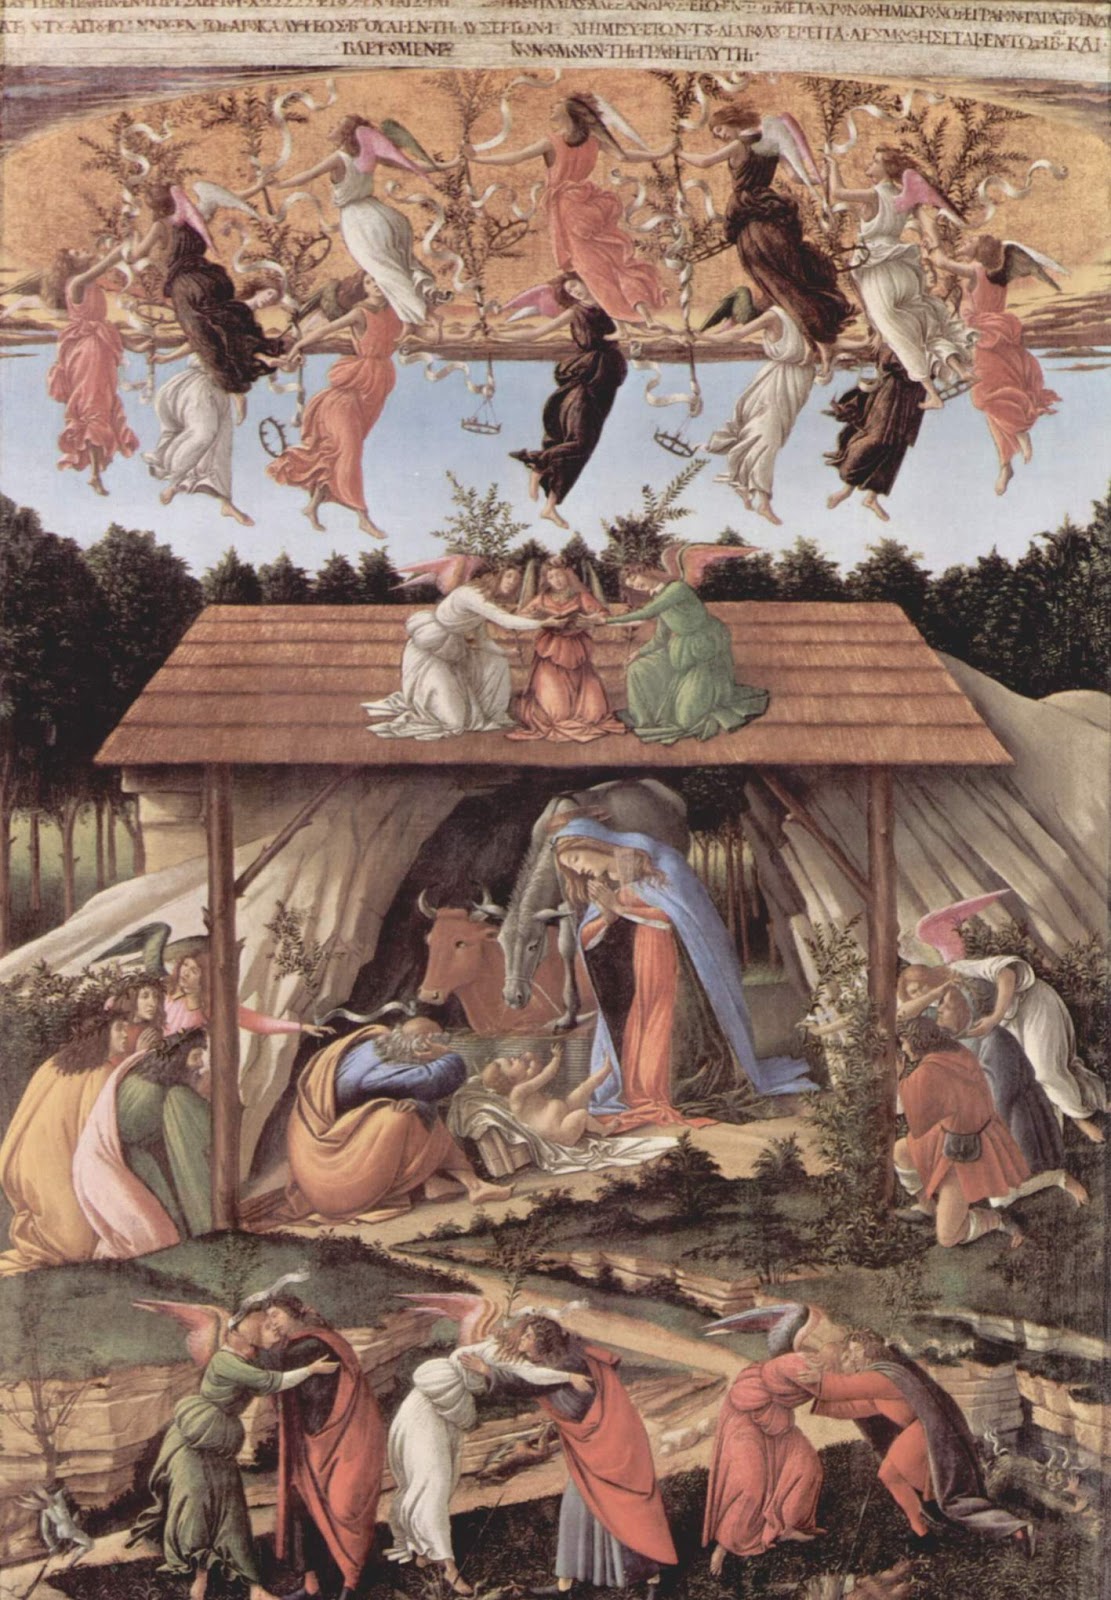 Sandro+Botticelli-1445-1510 (270).jpg